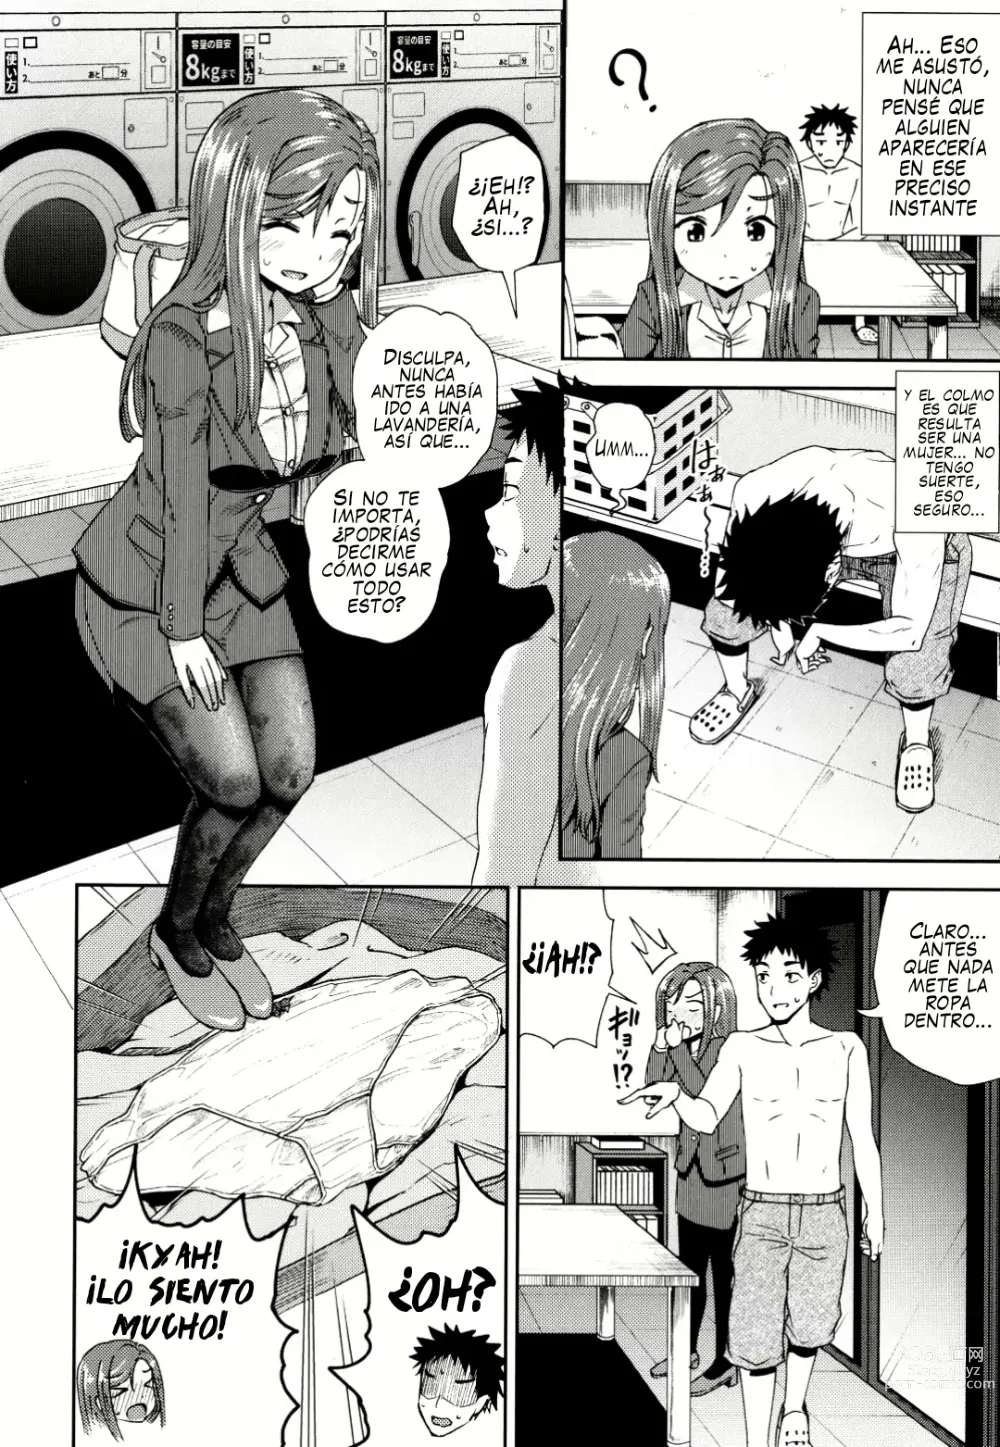 Page 2 of manga Fellati-o-mat